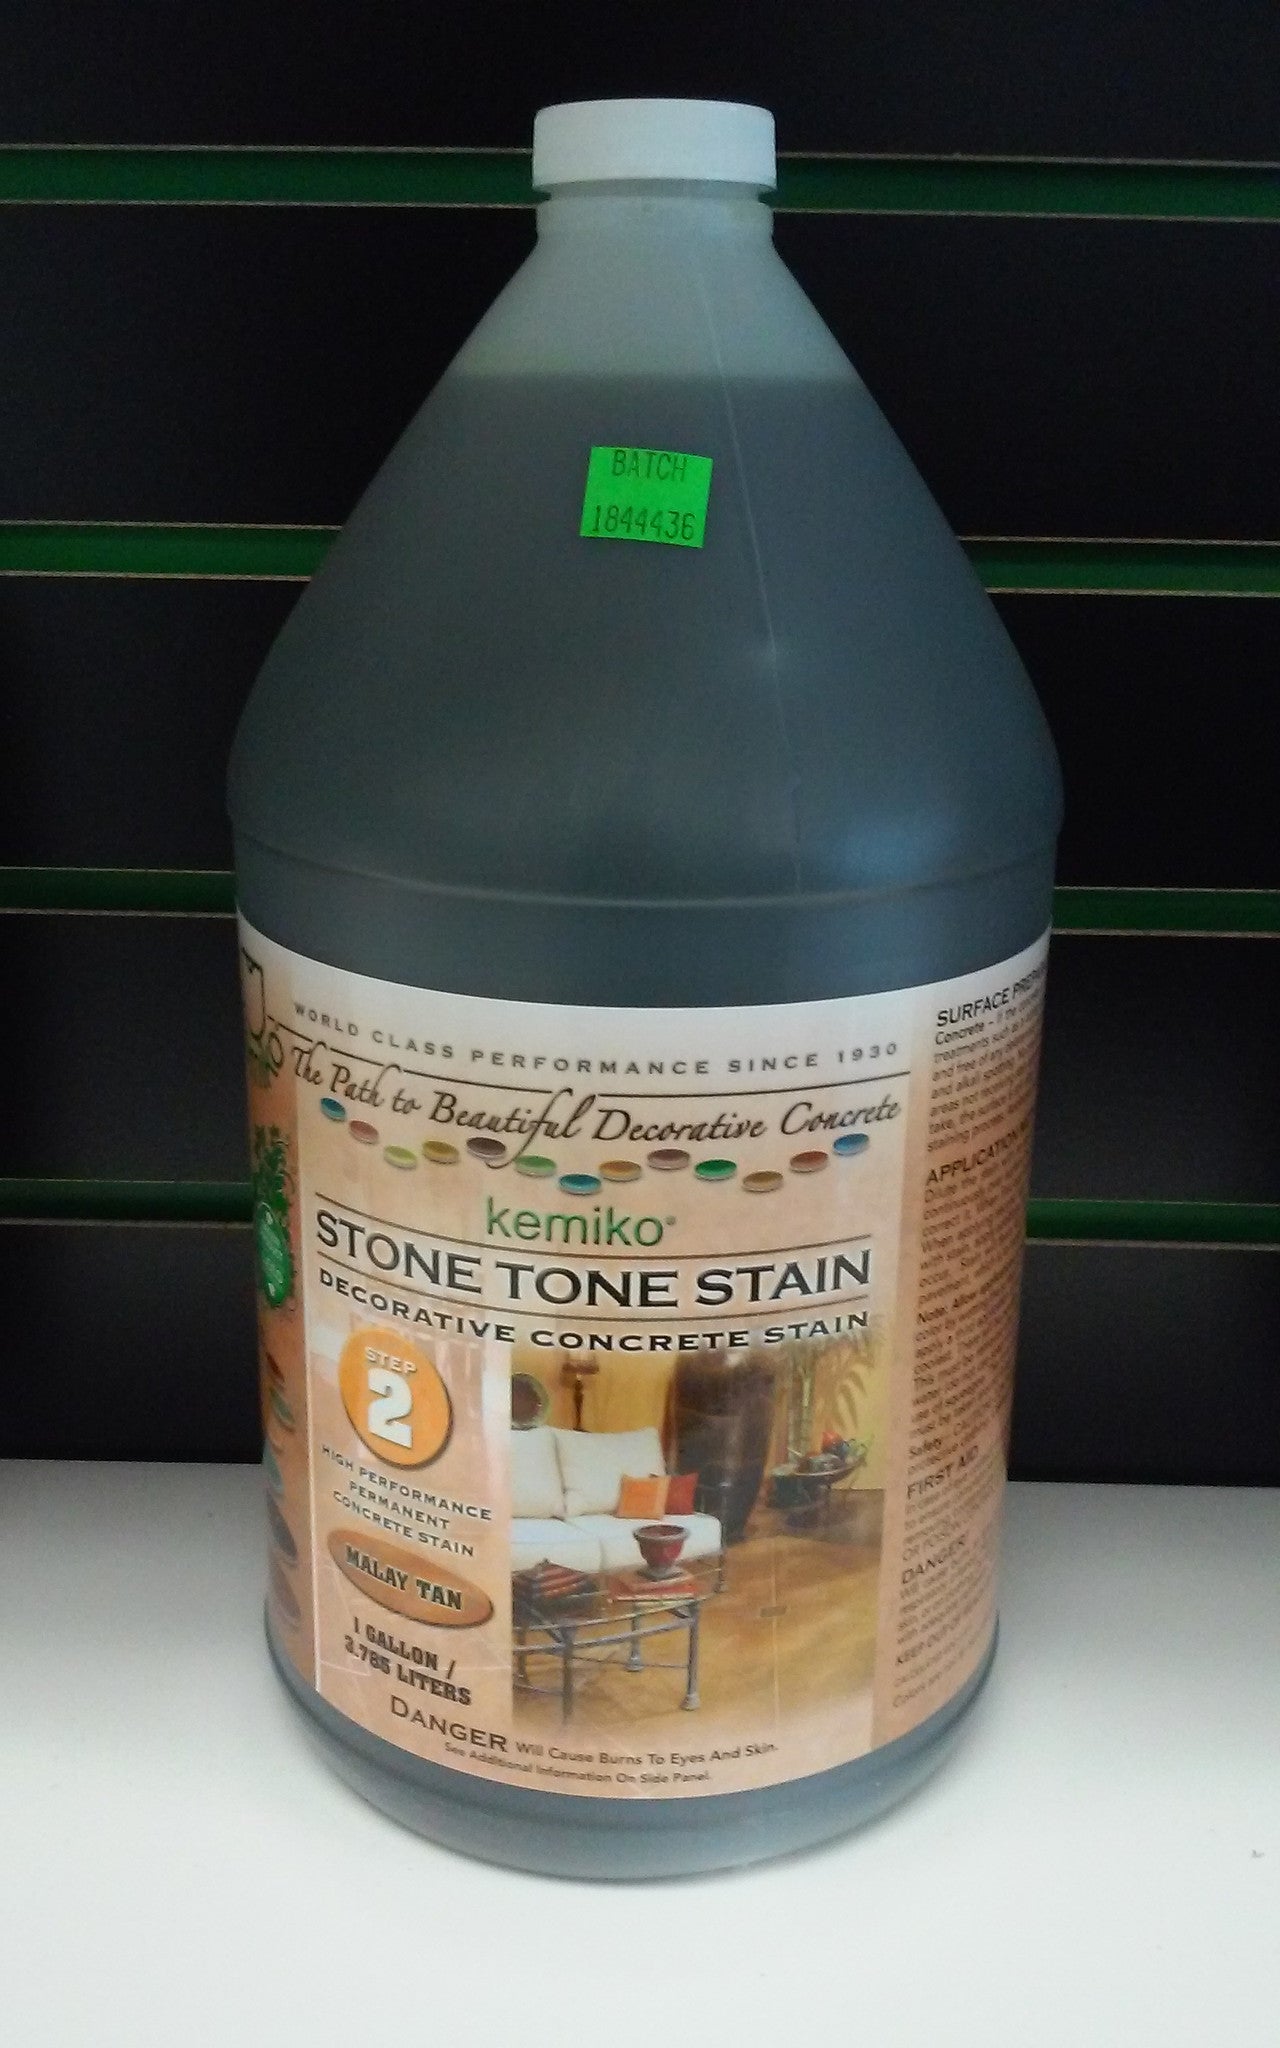 KEMIKO STONE TONE STAIN (Concrete Acid Stain) Malay Tan Gallon	